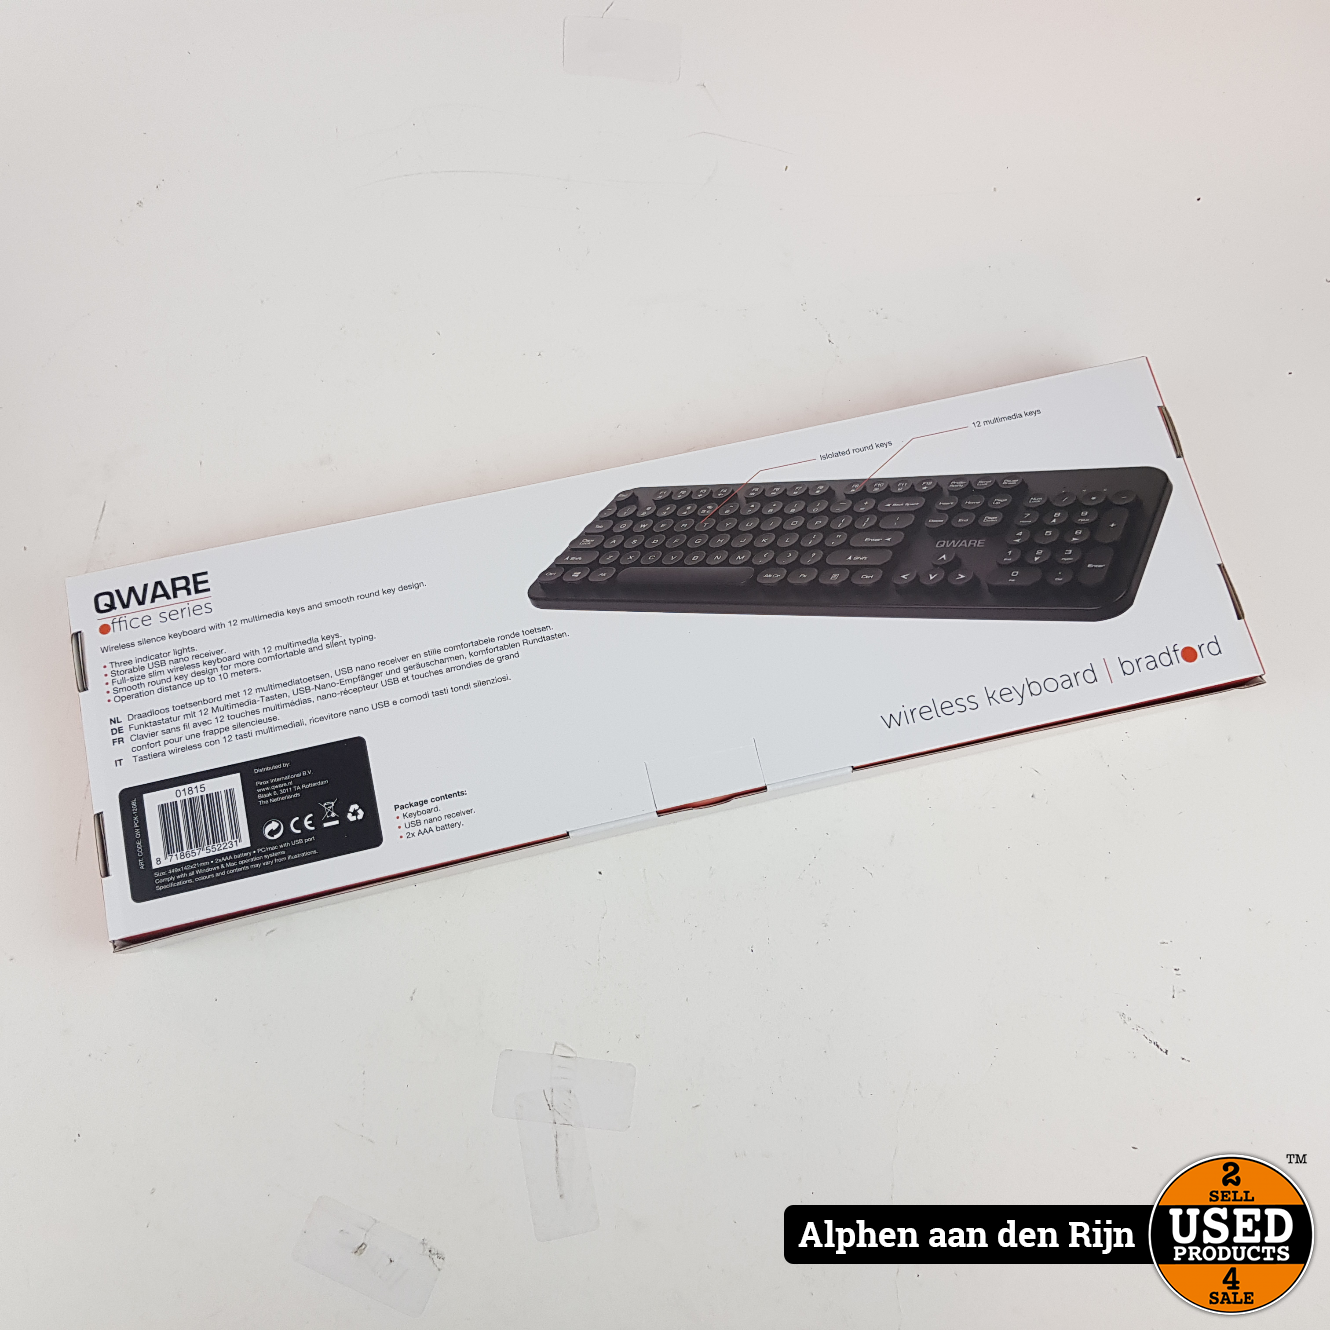 aansluiten waarde draad Qware draadloos toetsenbord zwart - Used Products Alphen aan den Rijn